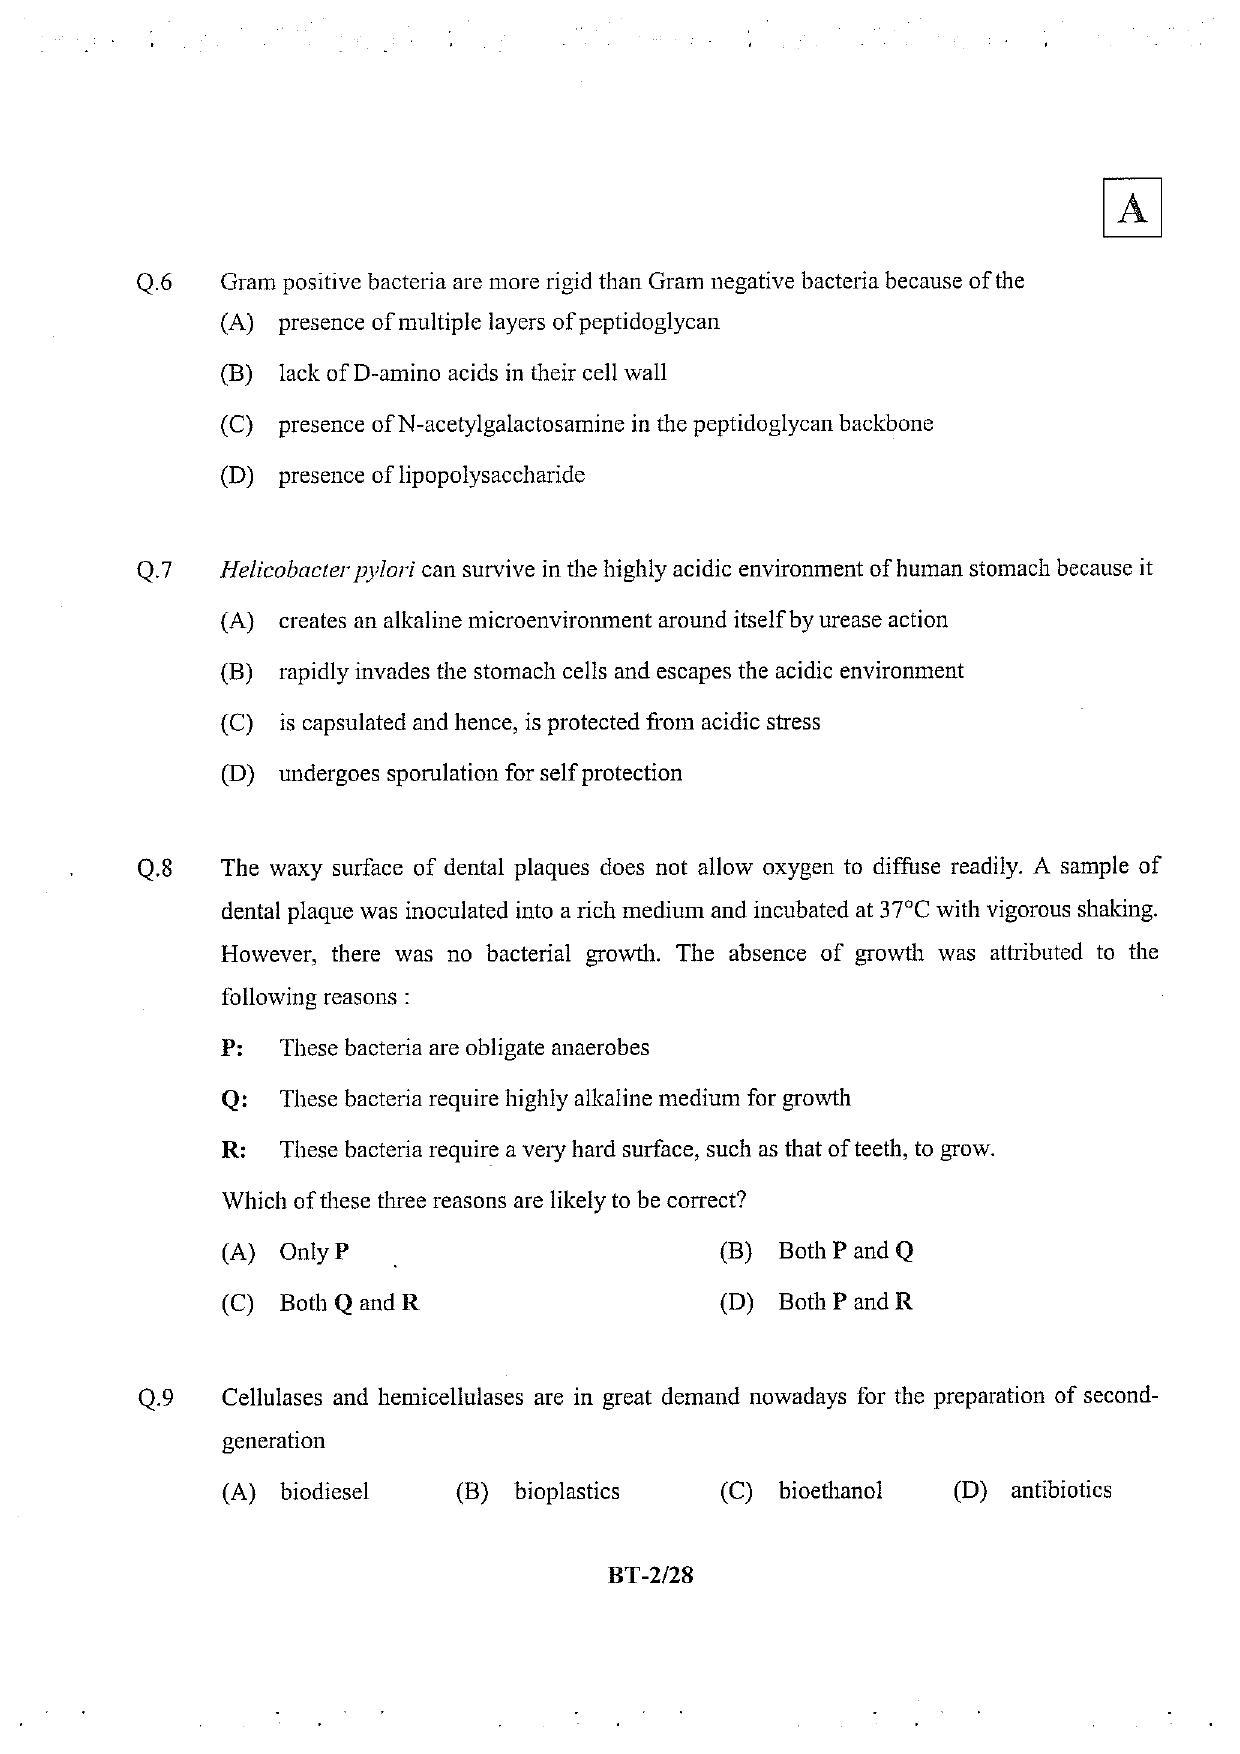 JAM 2013: BT Question Paper - Page 3